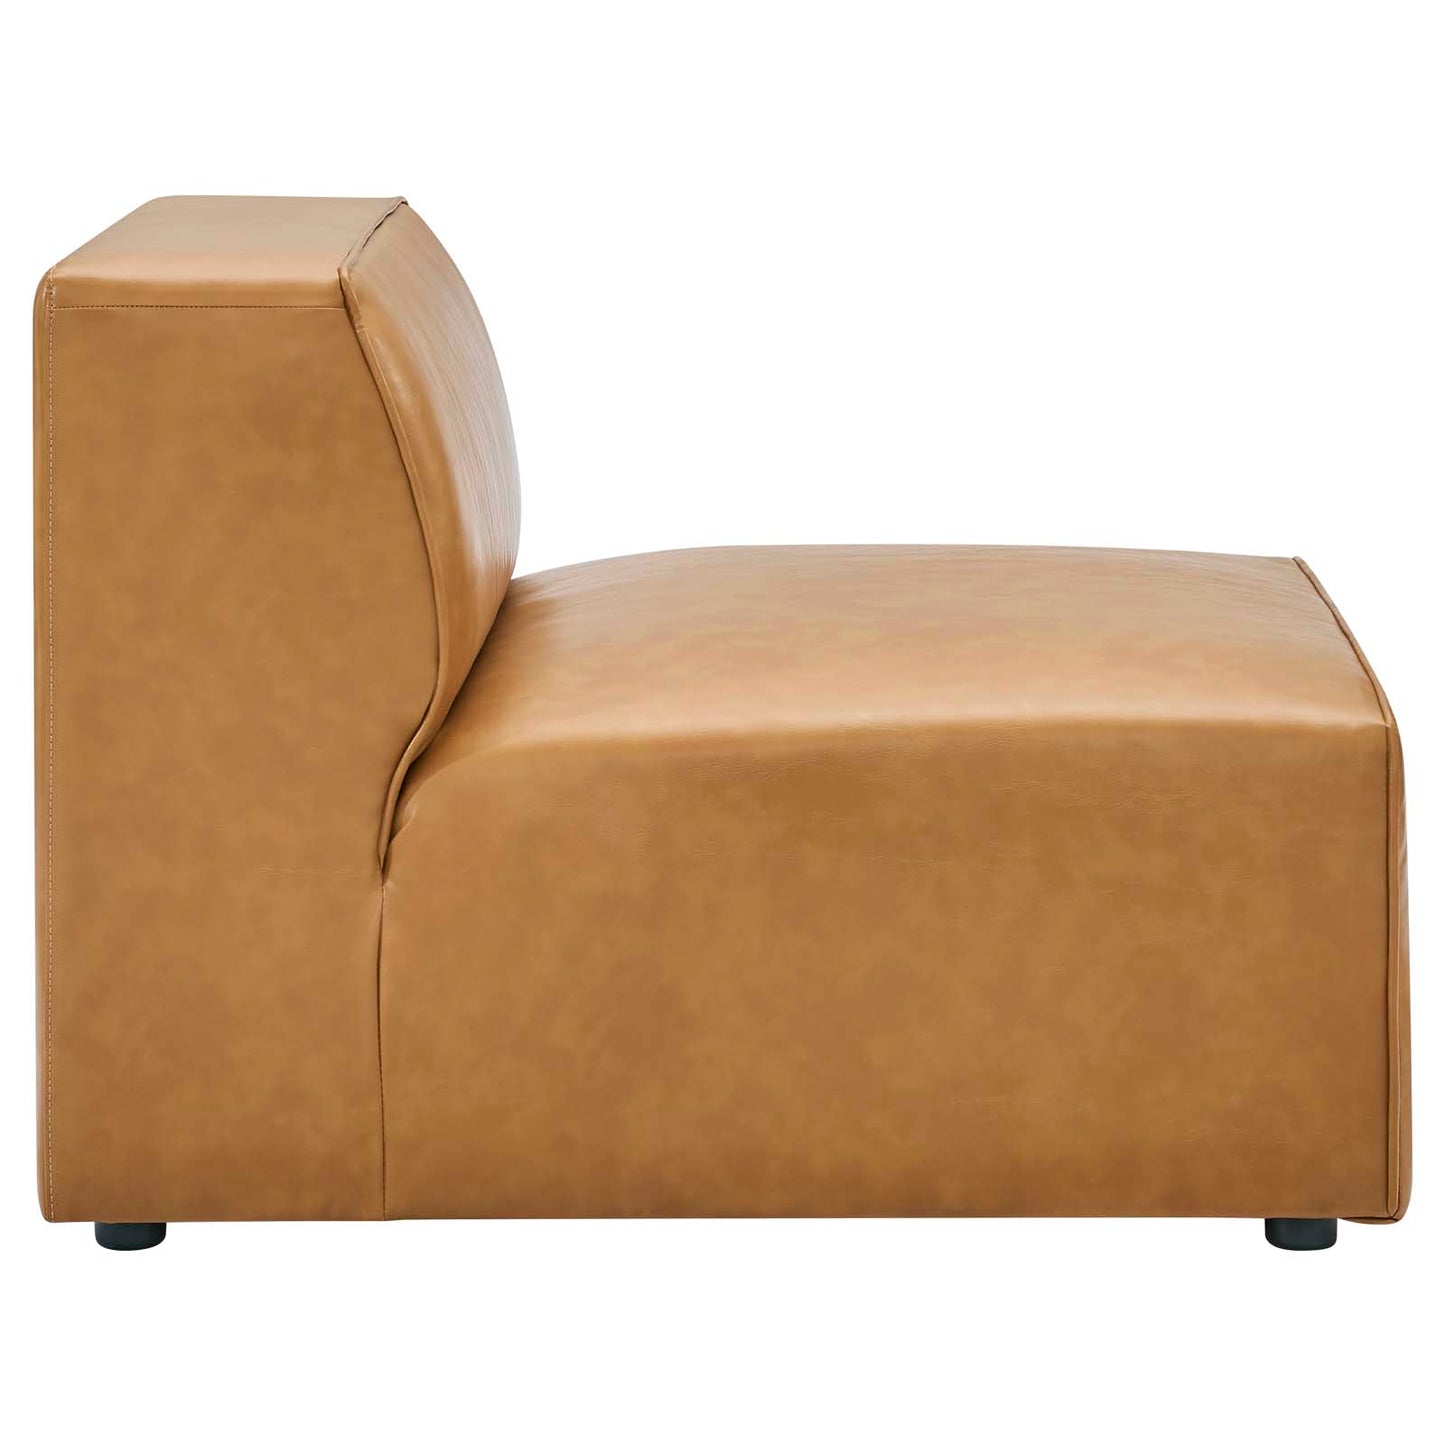 Mingle Vegan Leather Armless Chair Tan EEI-4623-TAN